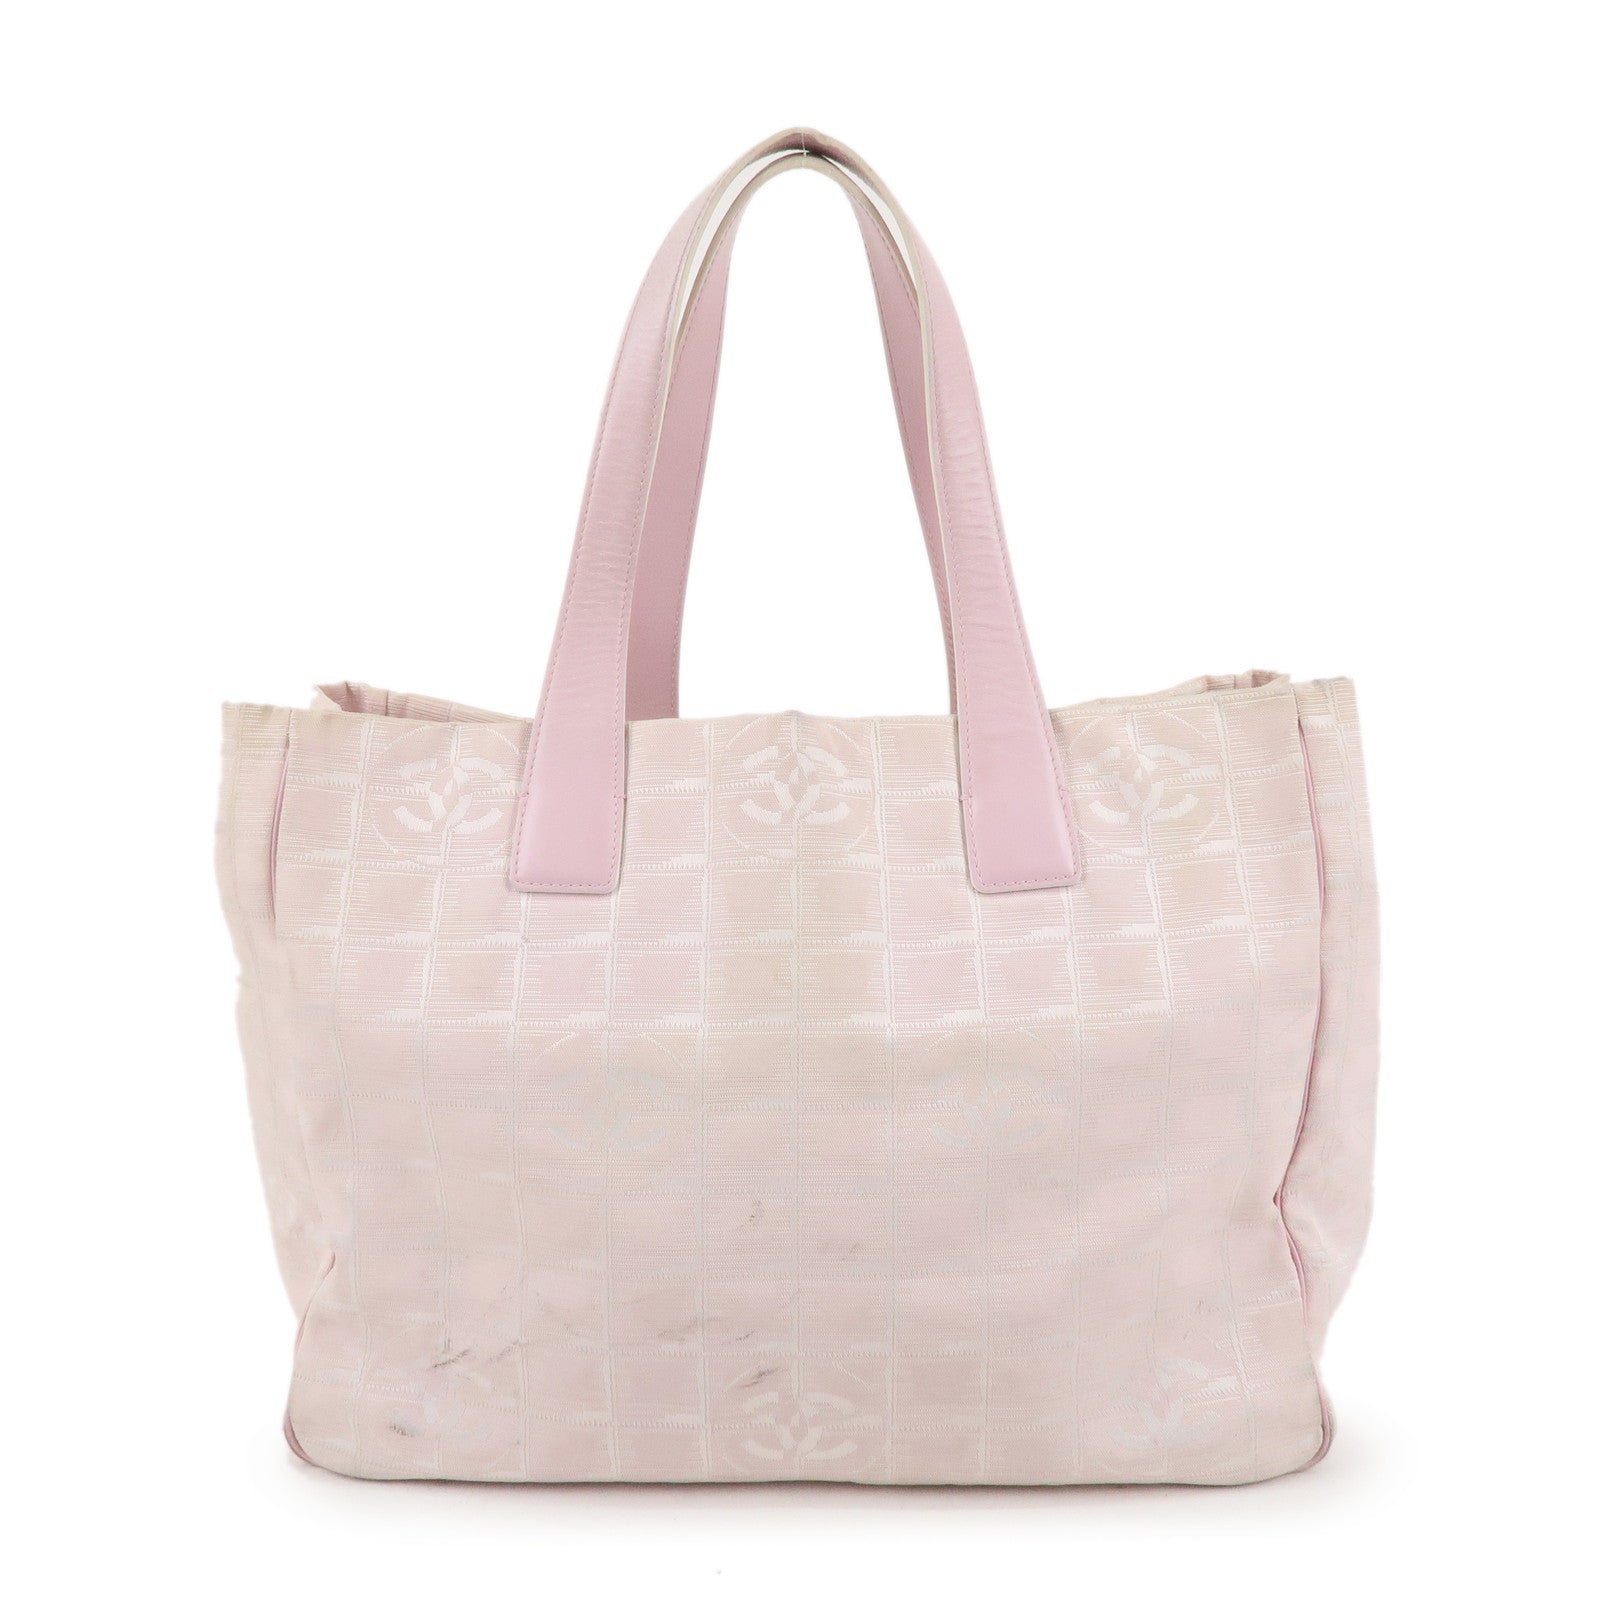 History of the bag: Chanel Flap Bag – l'Étoile de Saint Honoré